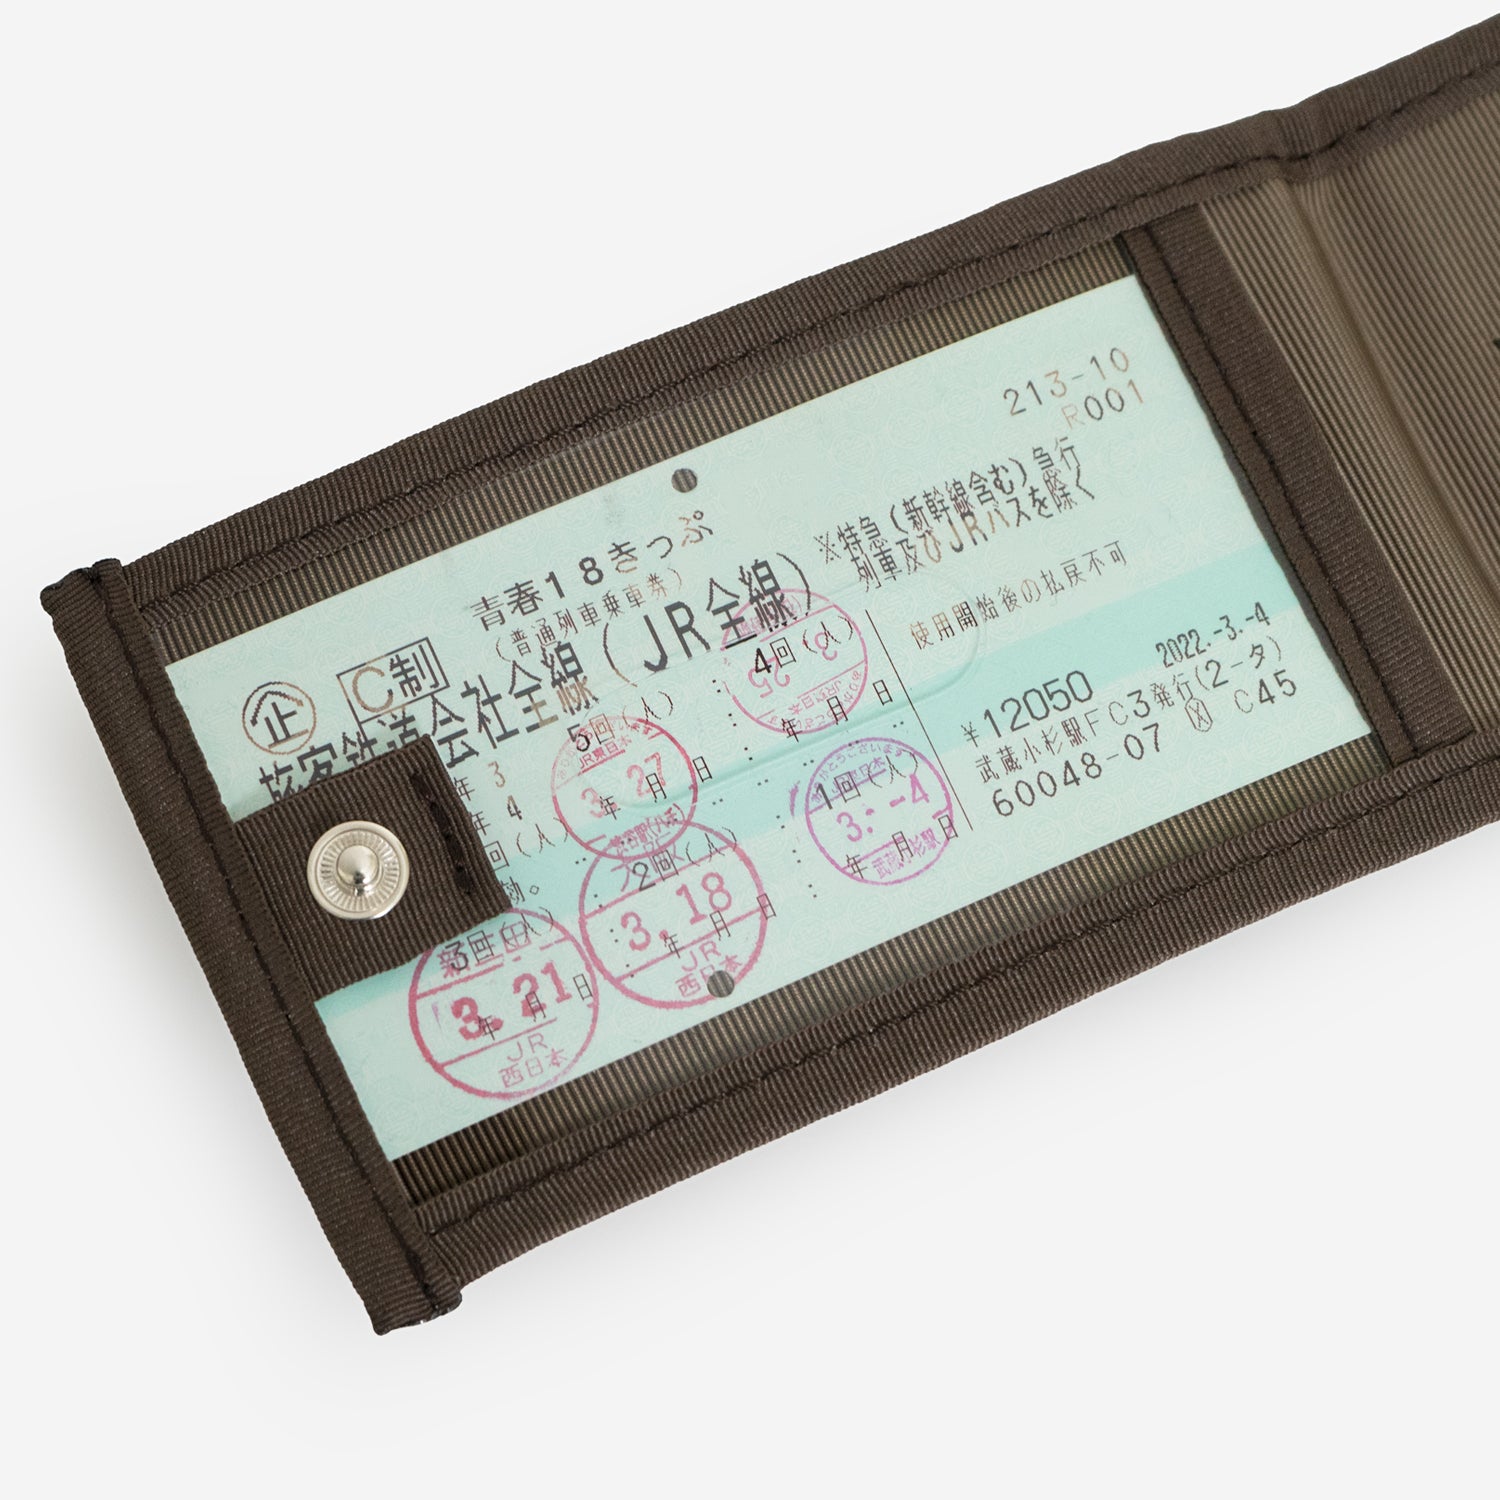 「N700系typeA 東海道新幹線モケットラゲージタグ」は、青春18きっぷなどの長さがあるチケットも入るサイズ。両面に収納スペースがあるので、複数枚でも見やすい仕様です。ホックで留めて、収納しているチケットや個人情報を隠すことができます。